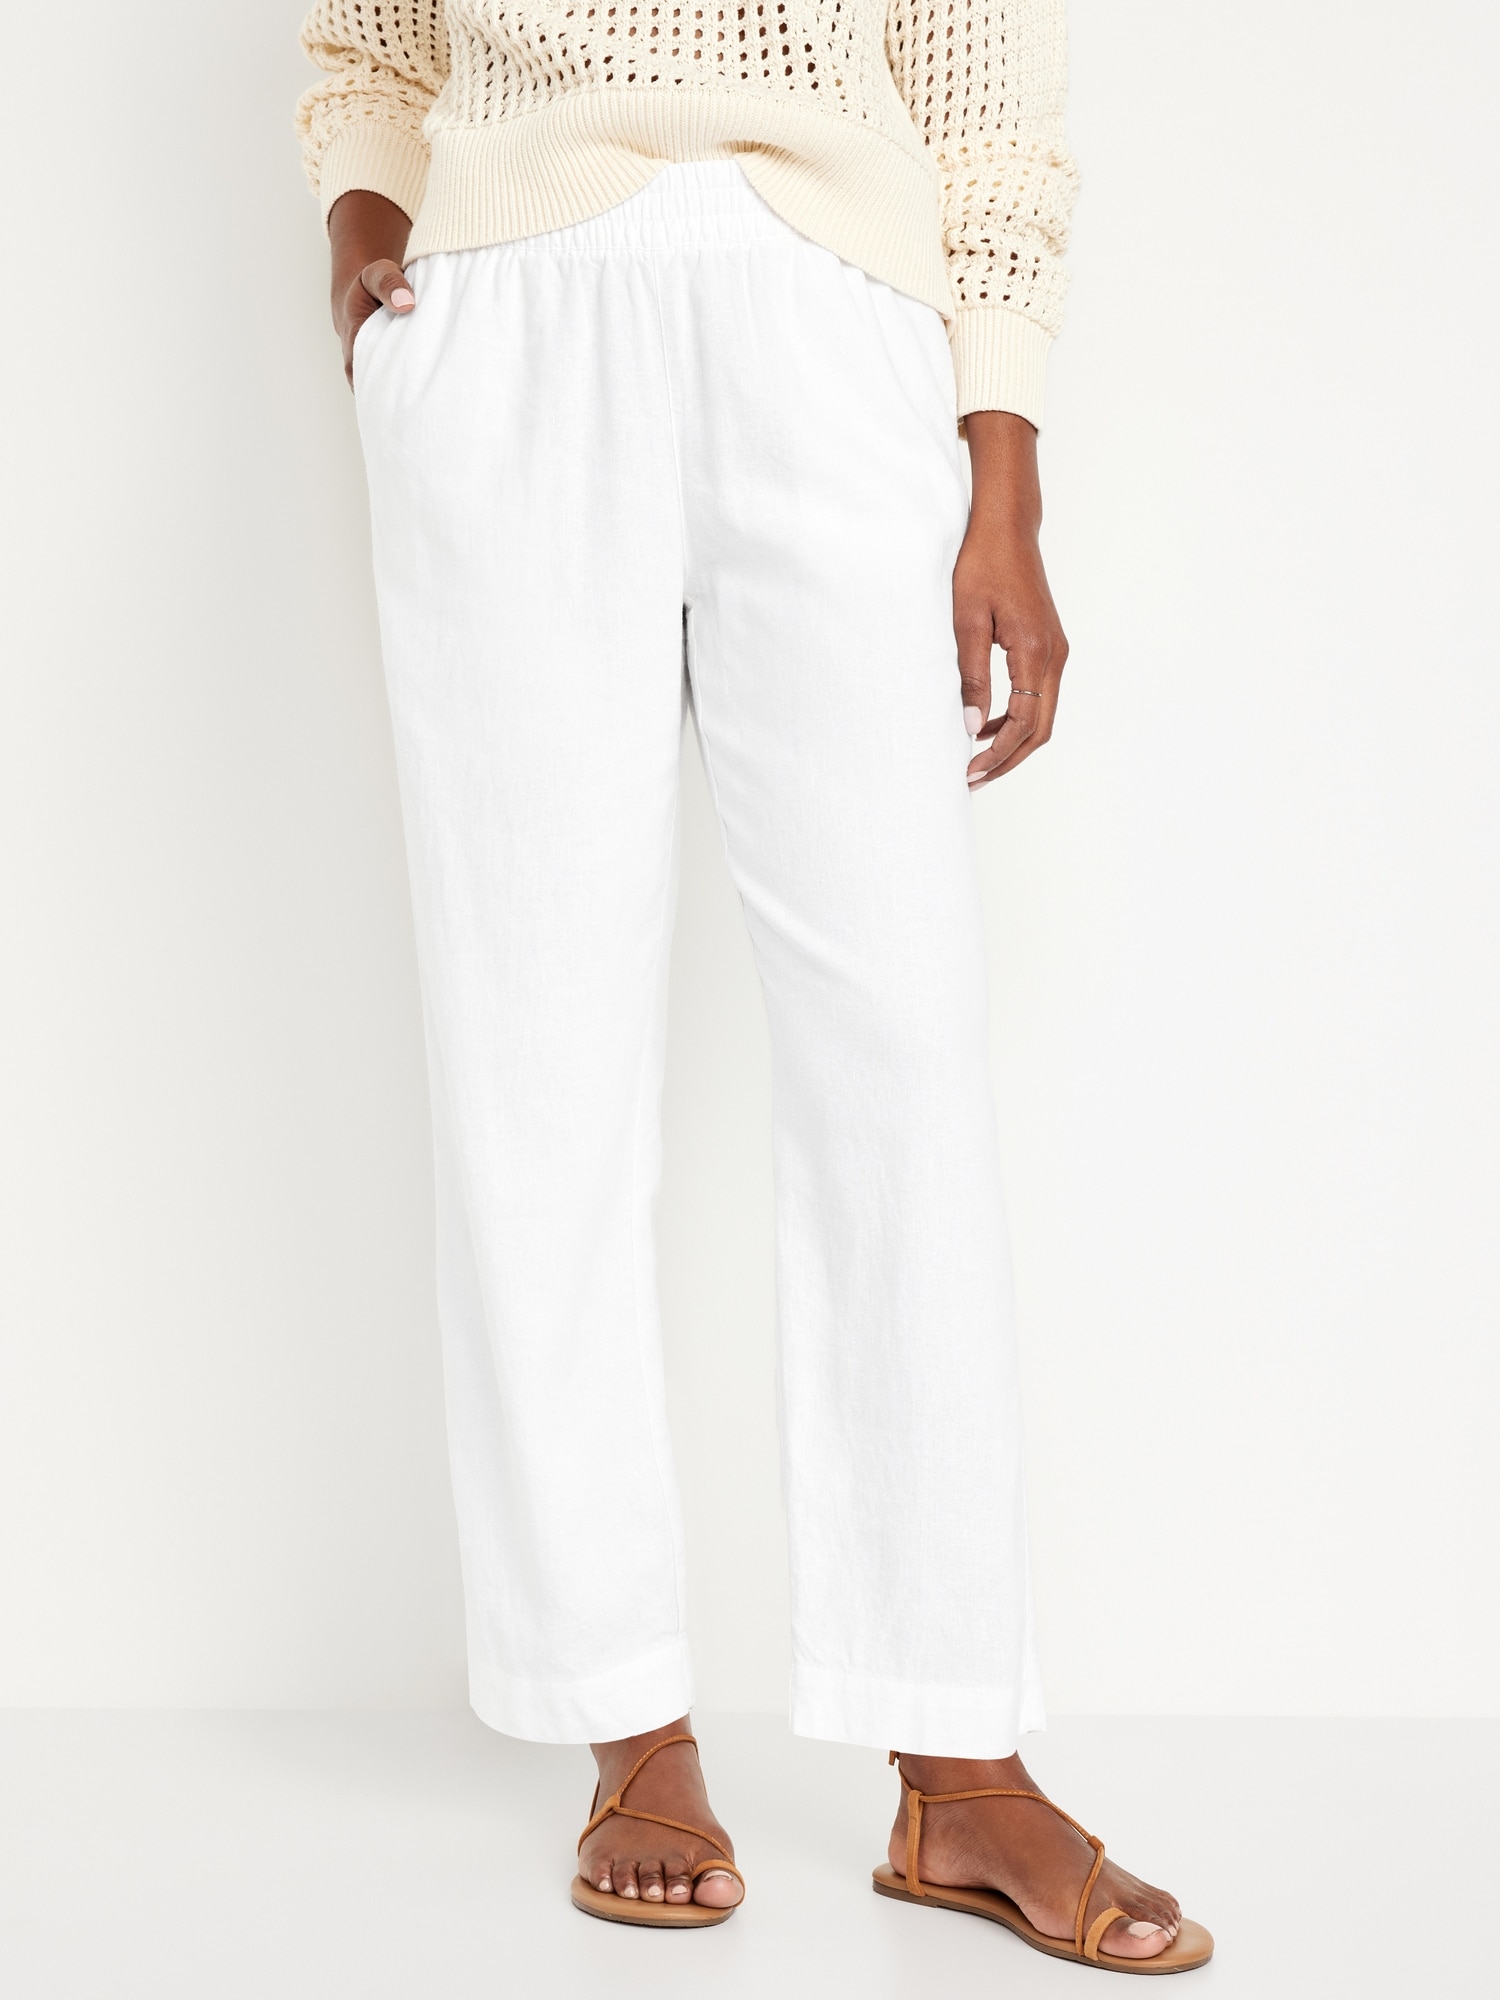 High-Waisted Linen-Blend Straight Pants Hot Deal